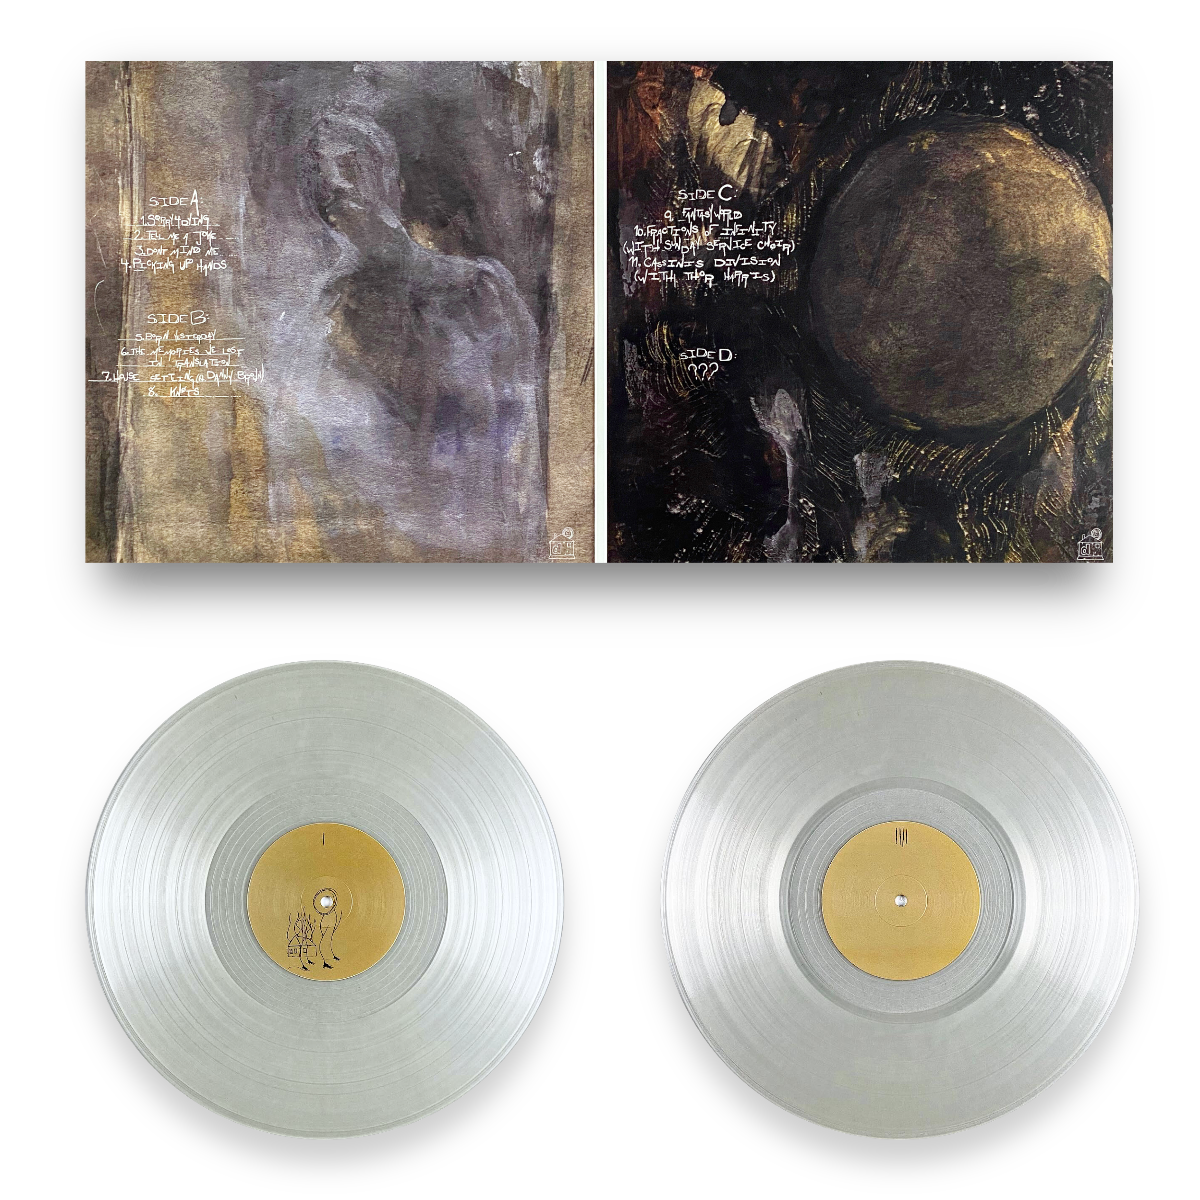 [ dA - 004 ] Quadeca - "I Didn't Mean To Haunt You" 2xLP Translucent Vinyl